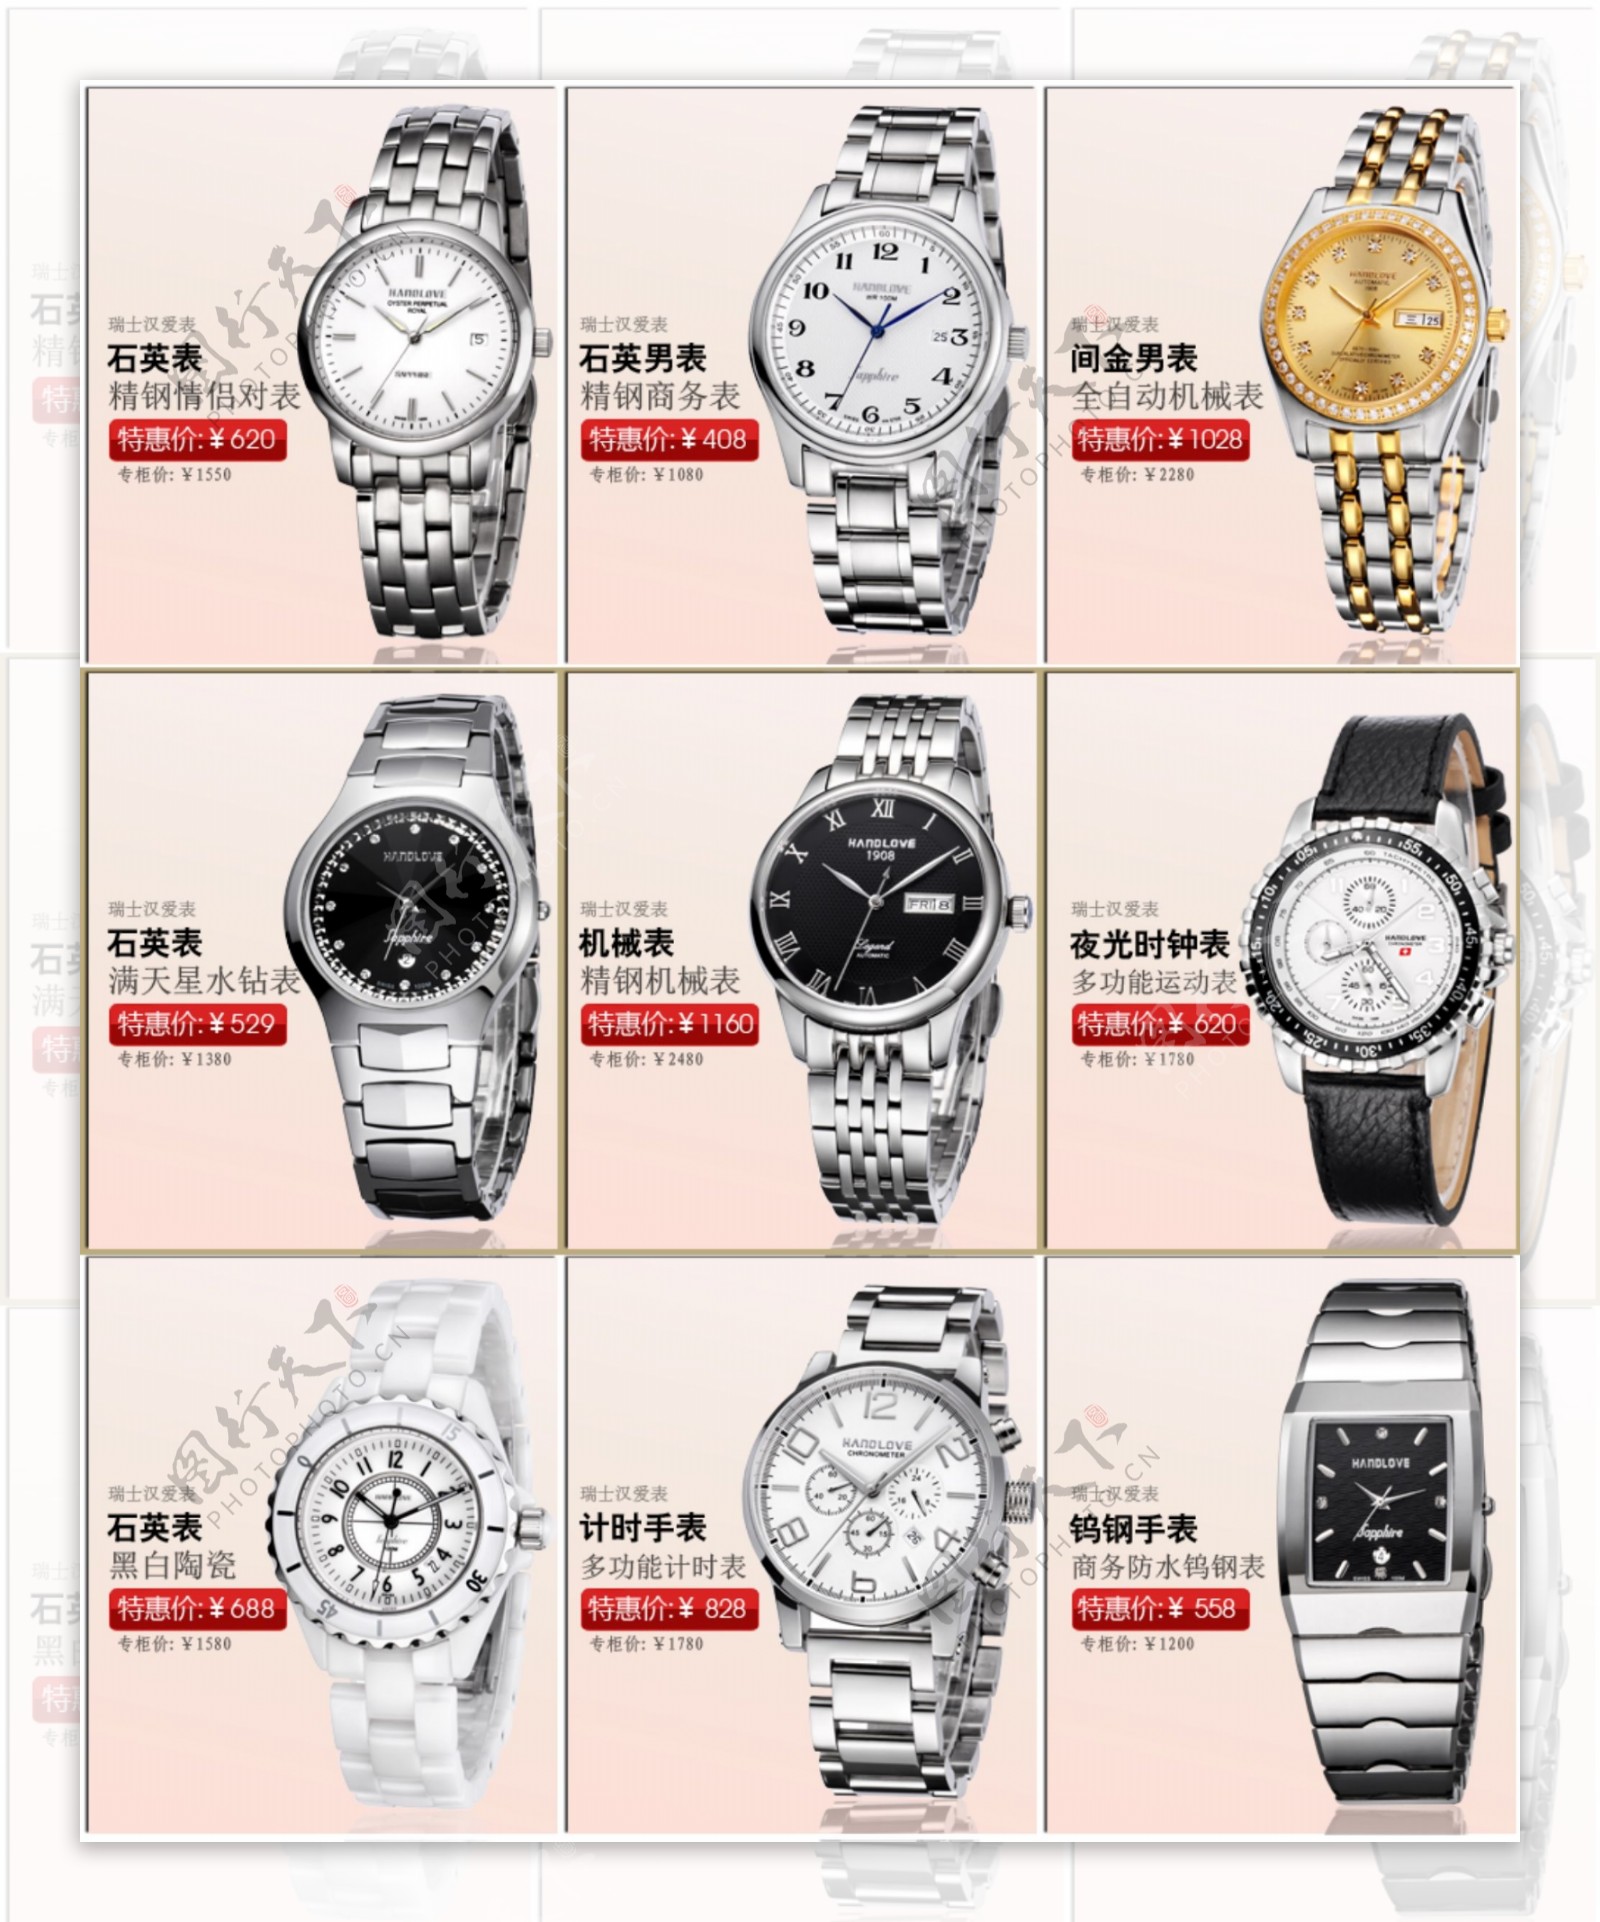 手表产品排列大图图片